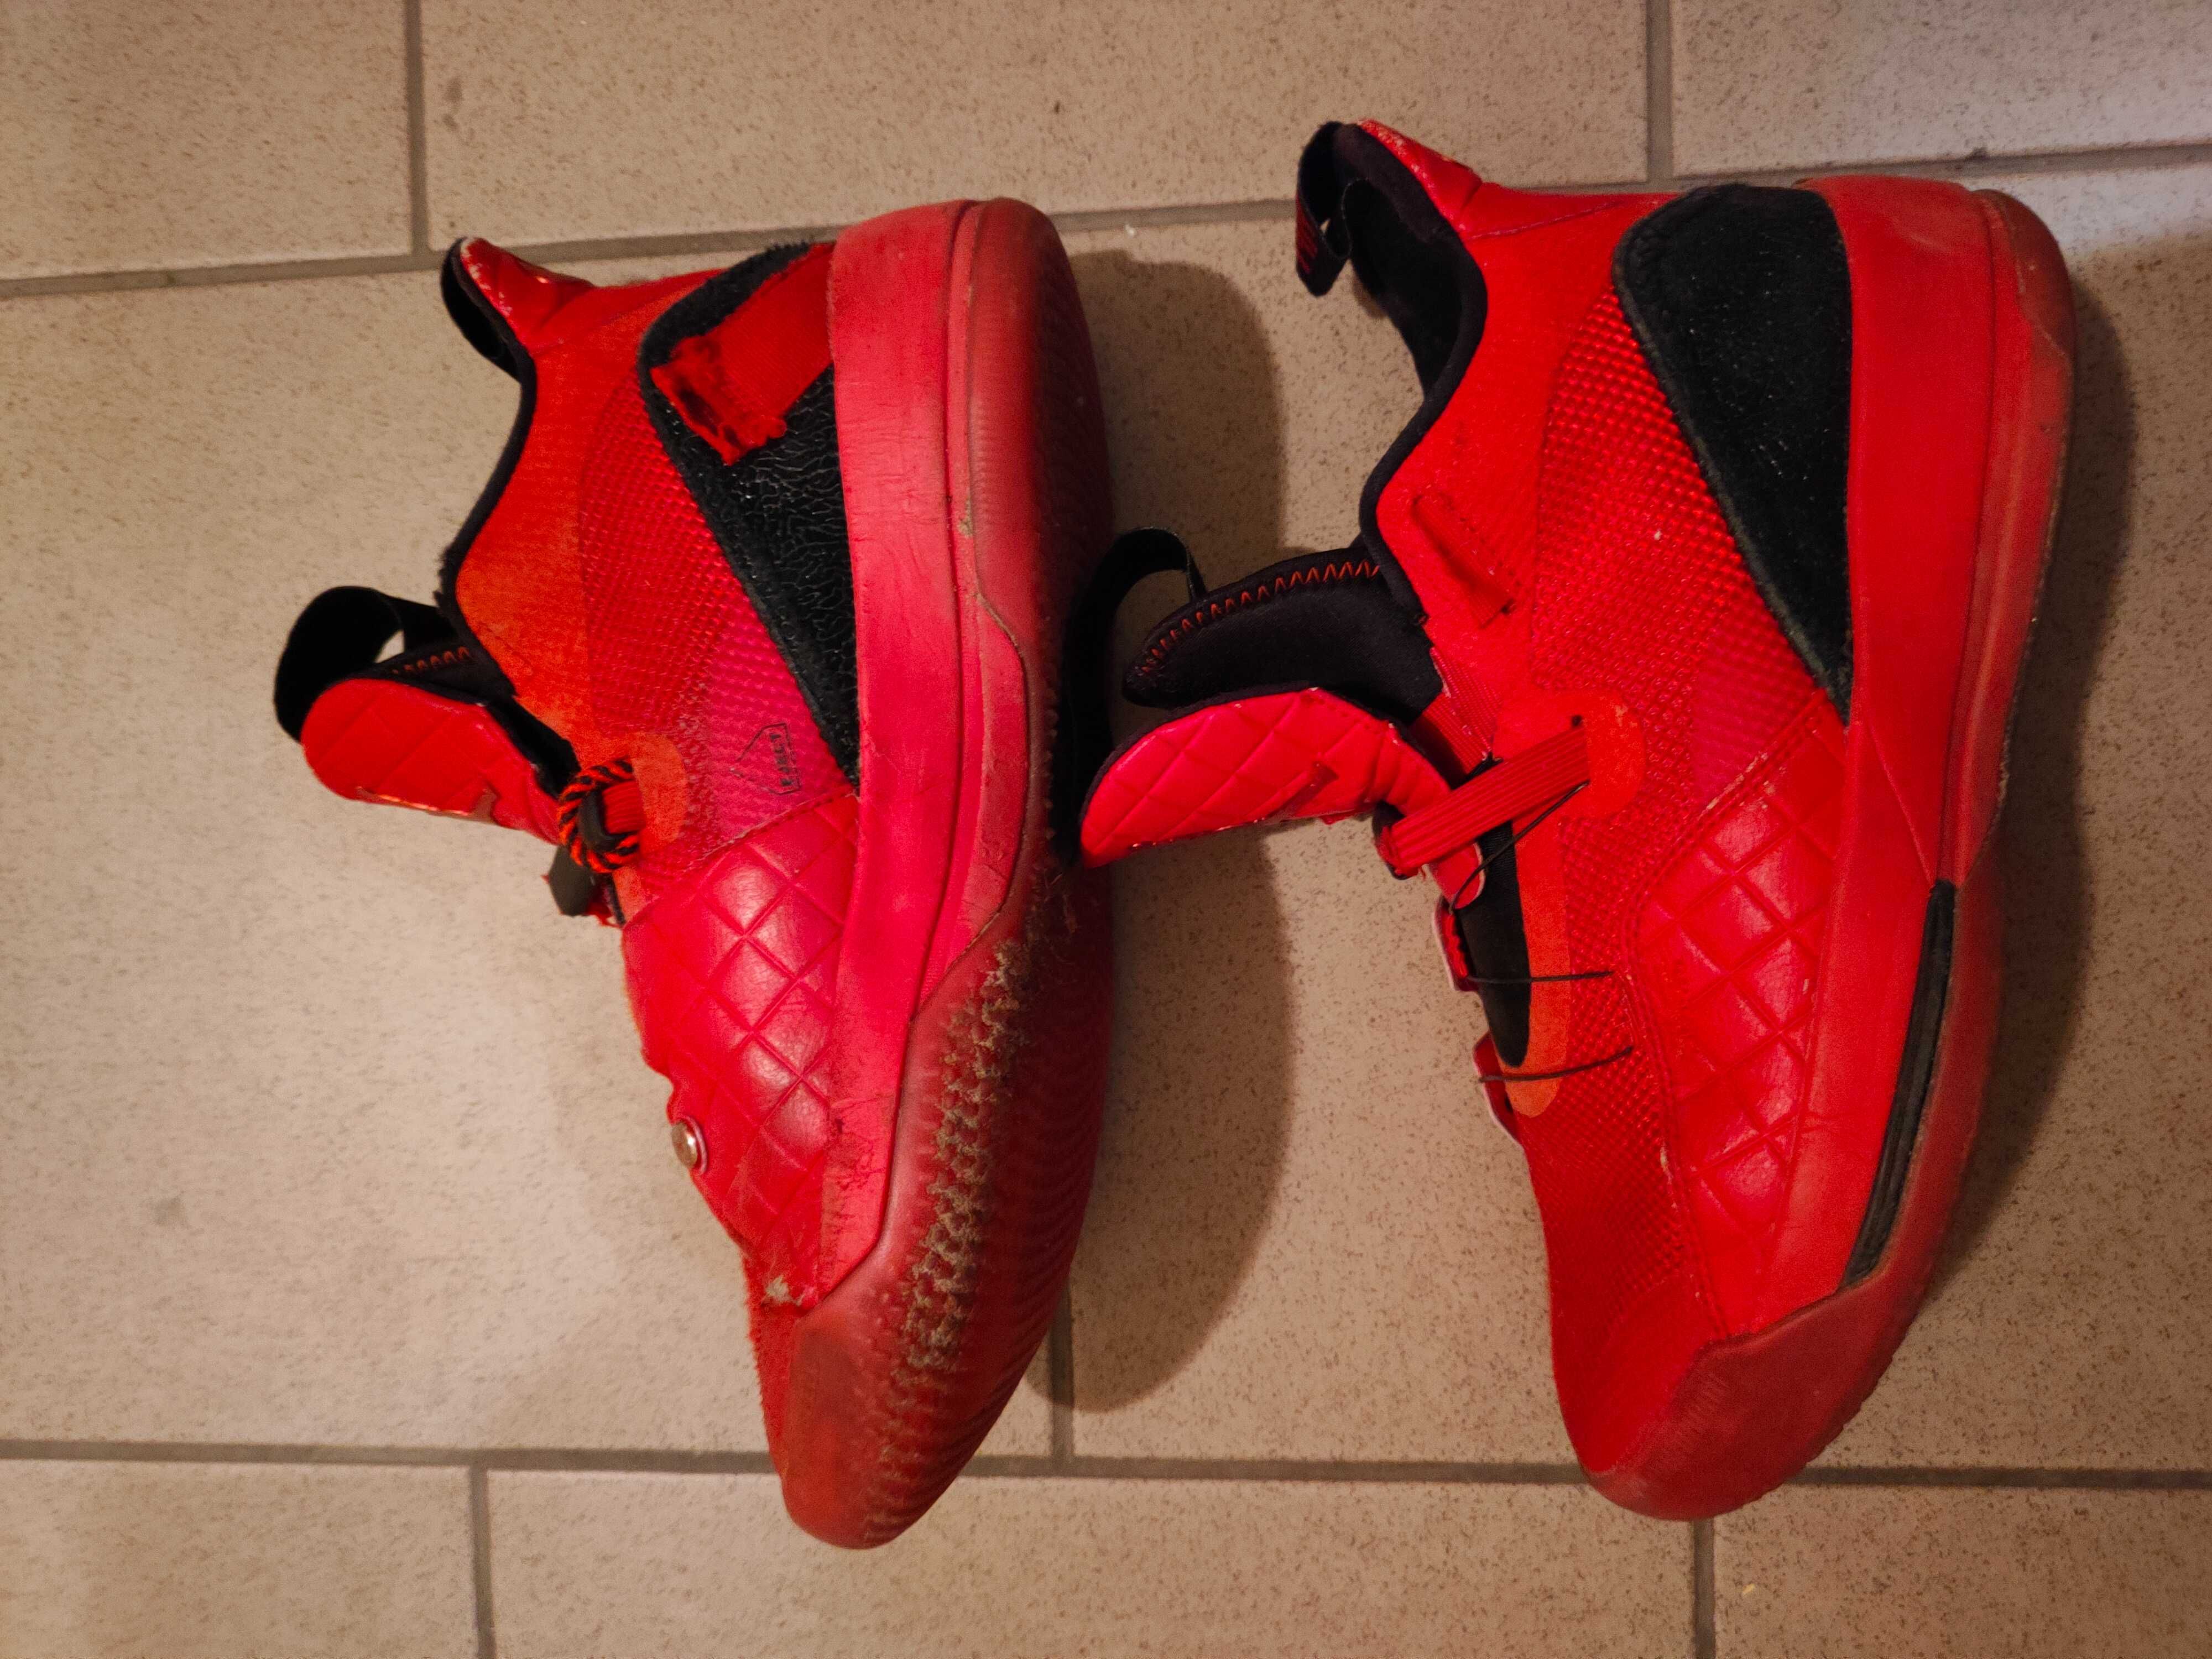 Nike Air Jordan buty męskie 40